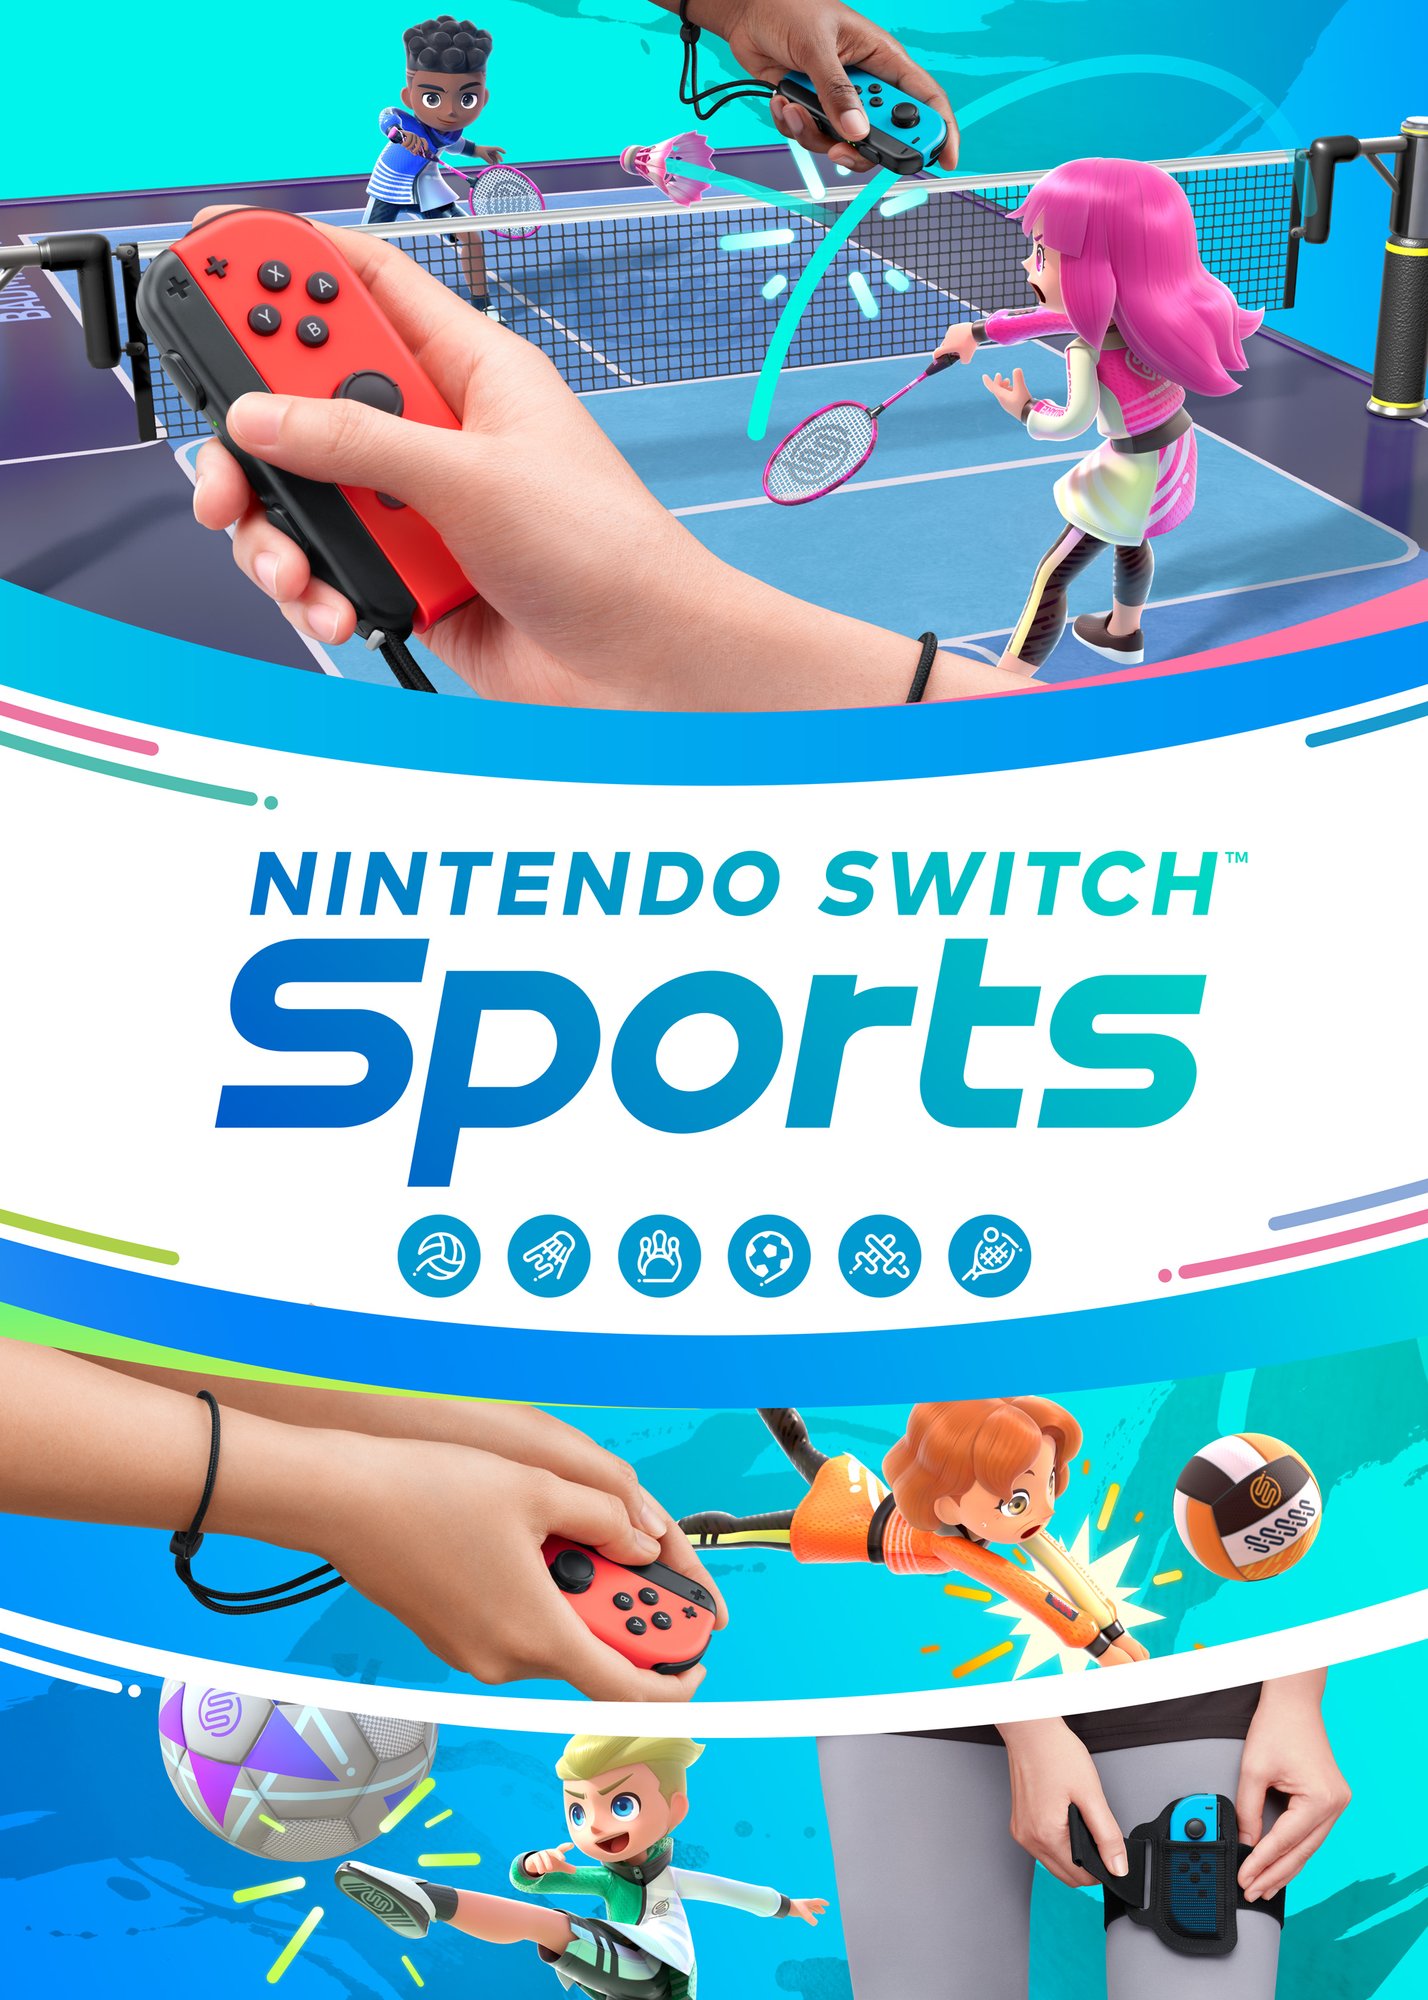 Entrevista com os criadores – Edição 5: Nintendo Switch Sports